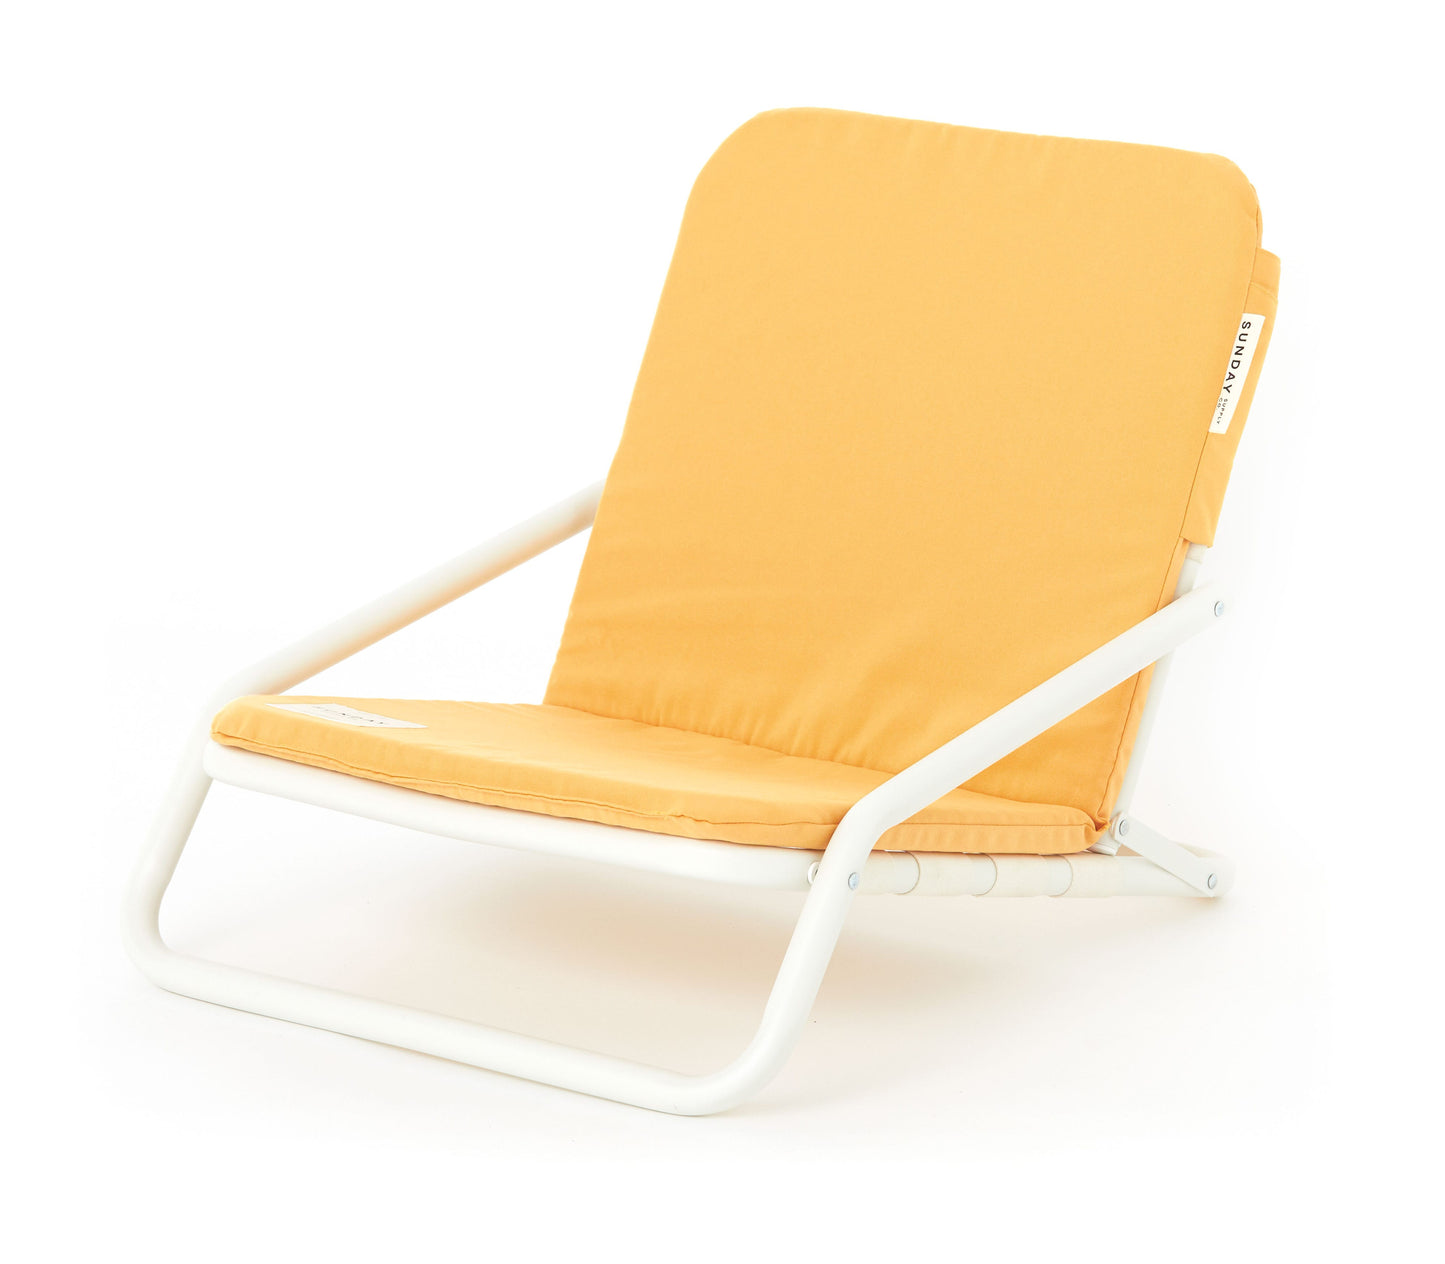 Golden Beach Chair